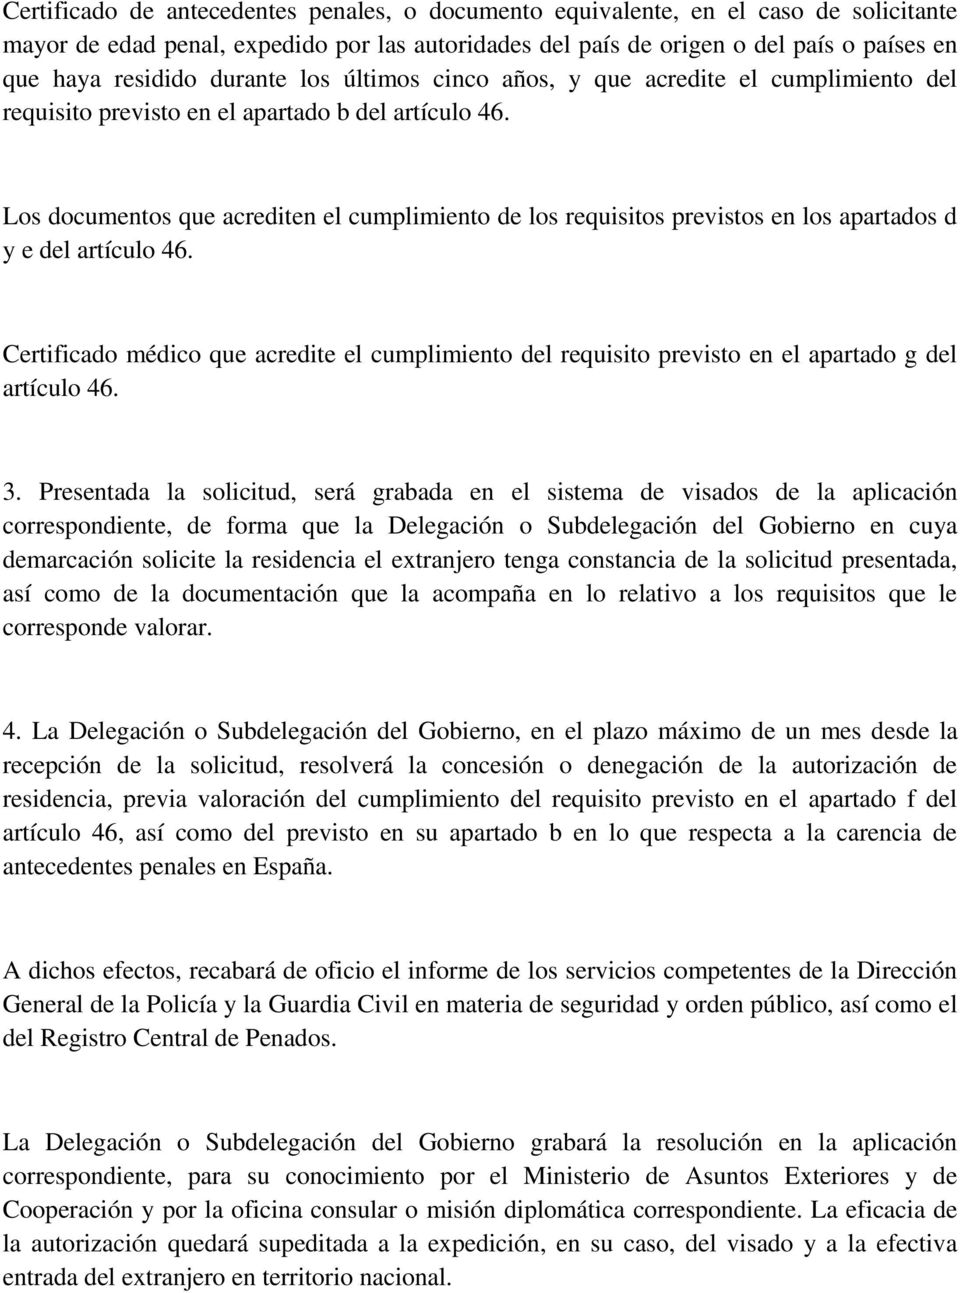 Los documentos que acrediten el cumplimiento de los requisitos previstos en los apartados d y e del artículo 46.